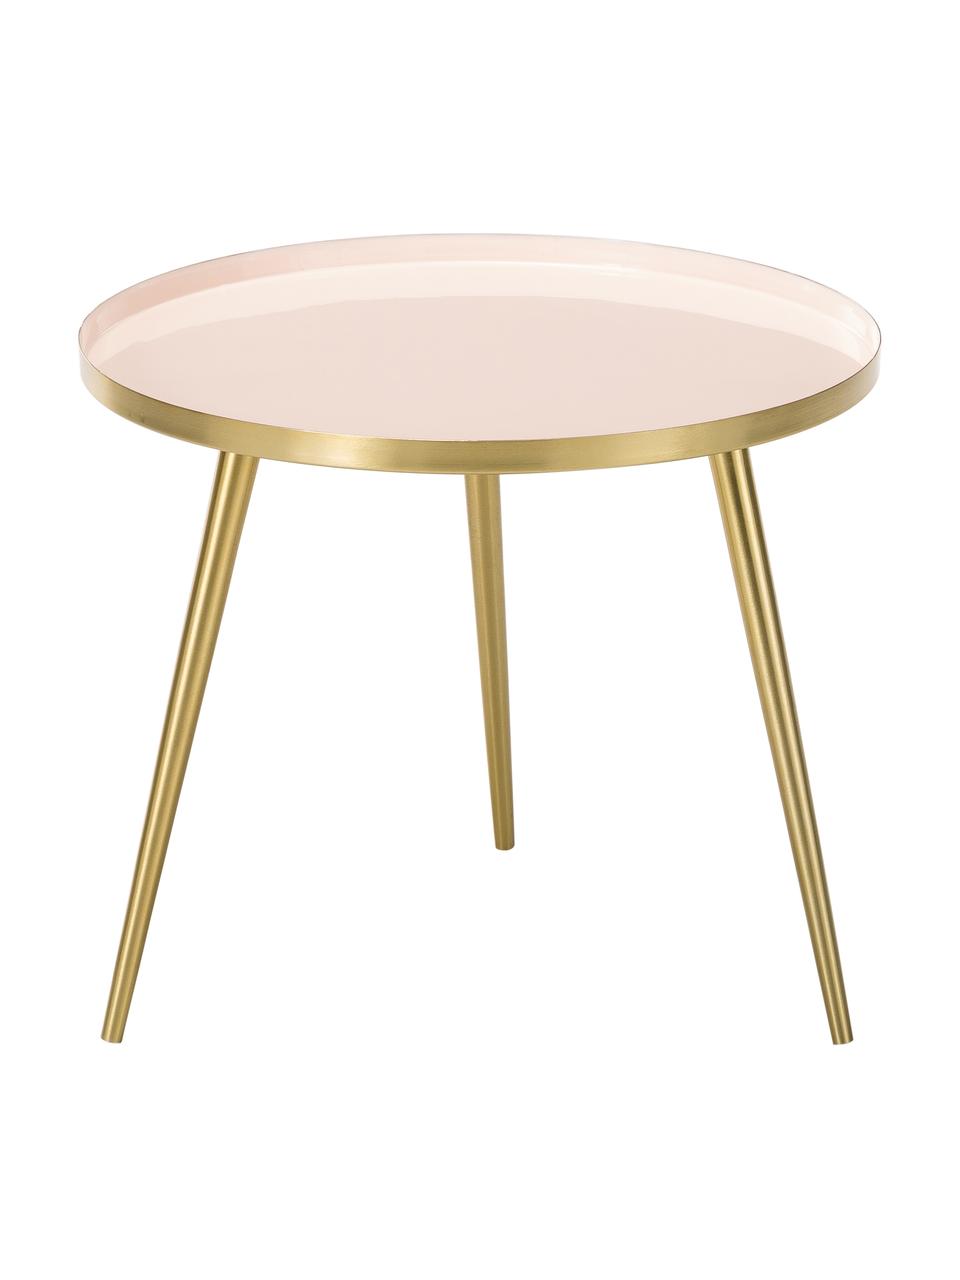 Runder mesa auxiliar Amalia aus metal, Tablero: , Parte superior: metal, esmaltado, Rosa pálido, dorado, Ø 50 x Al 42 cm